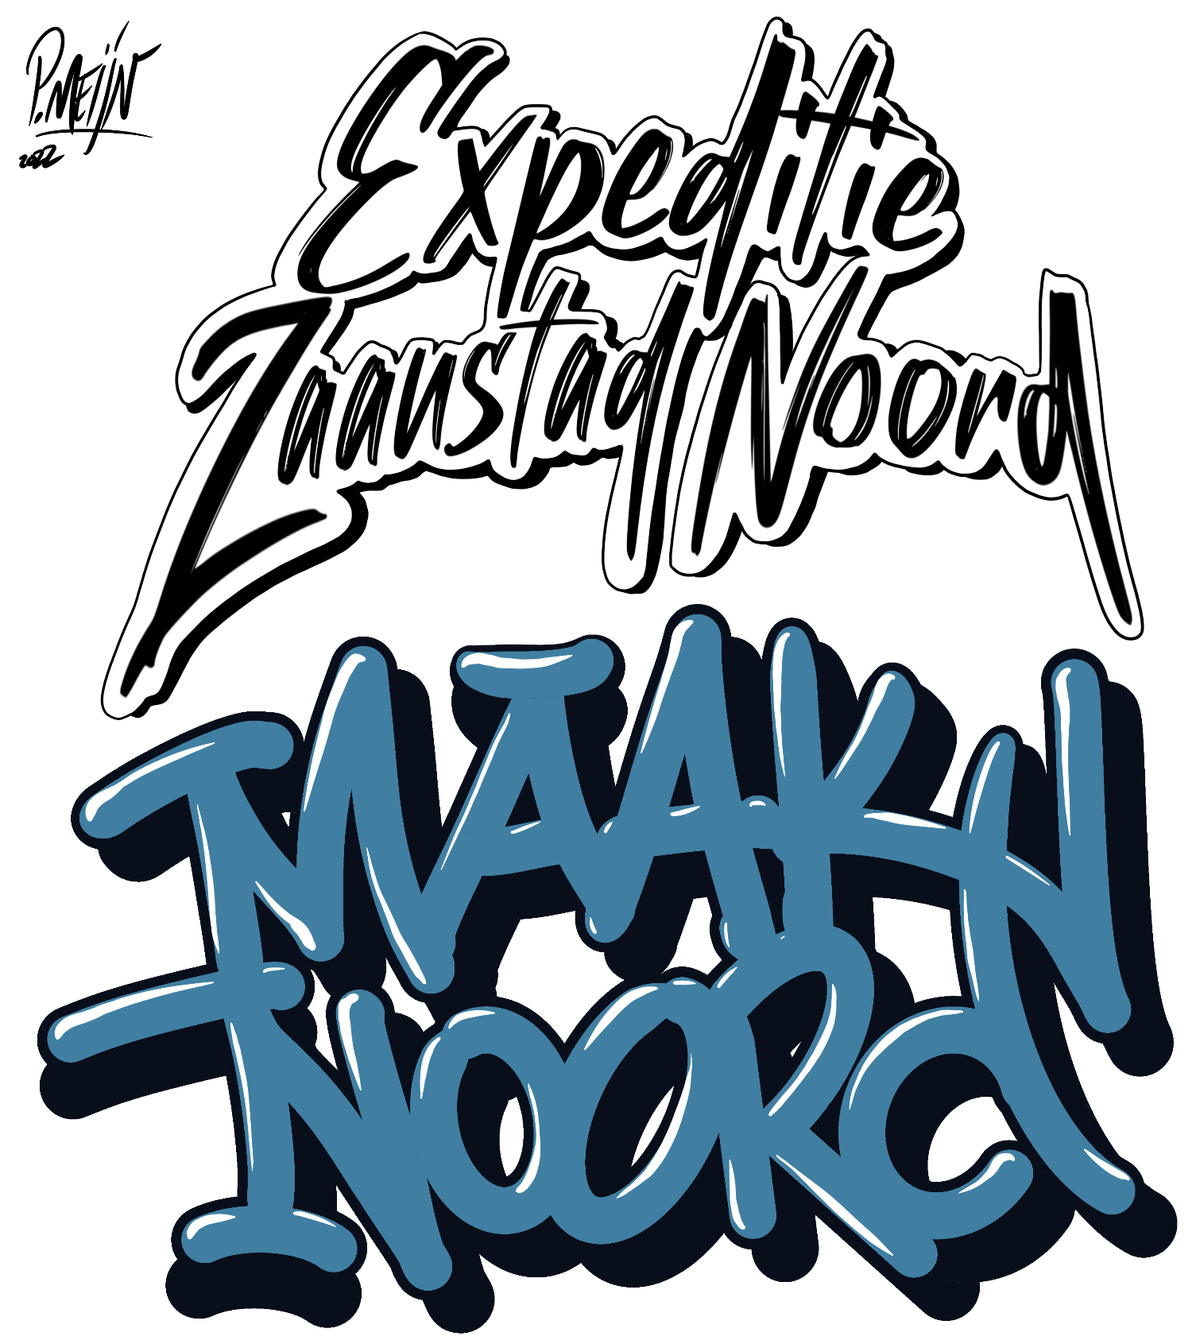 : graffitikunstenaar Peter Meijn maakte een ontwerp voor het logo van Expeditie Zaanstad Noord